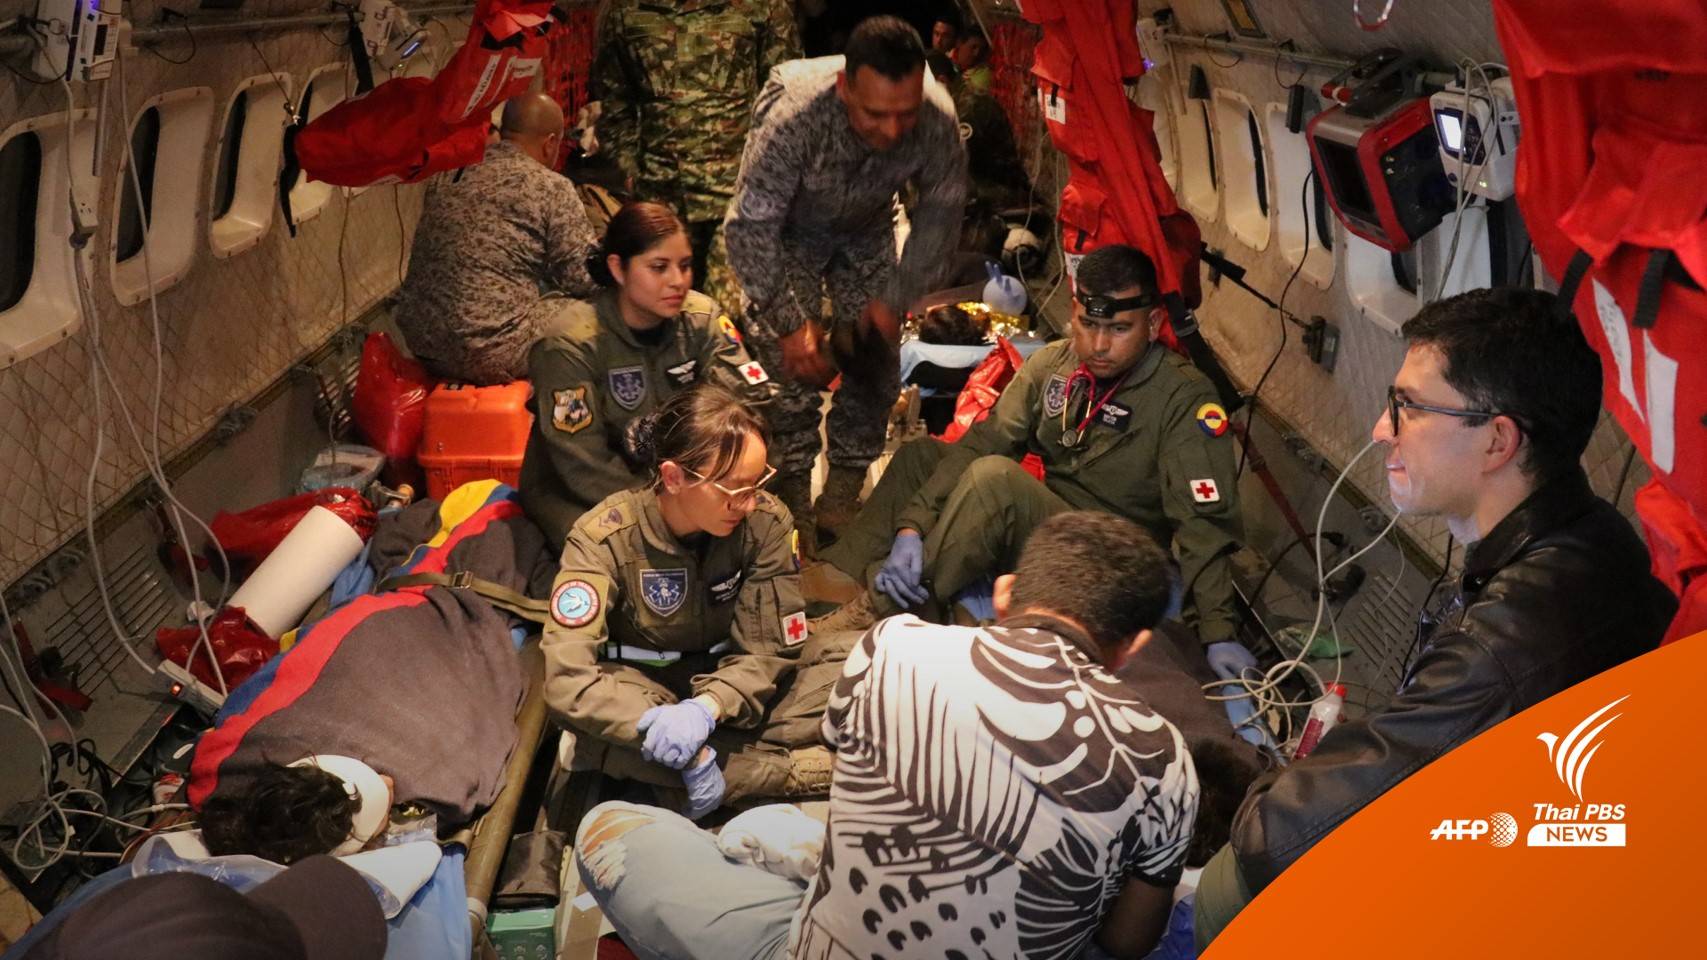 ปาฏิหาริย์ เด็ก 4 คนรอด 40 วันในป่าแอมะซอน จากเหตุเครื่องบินตก